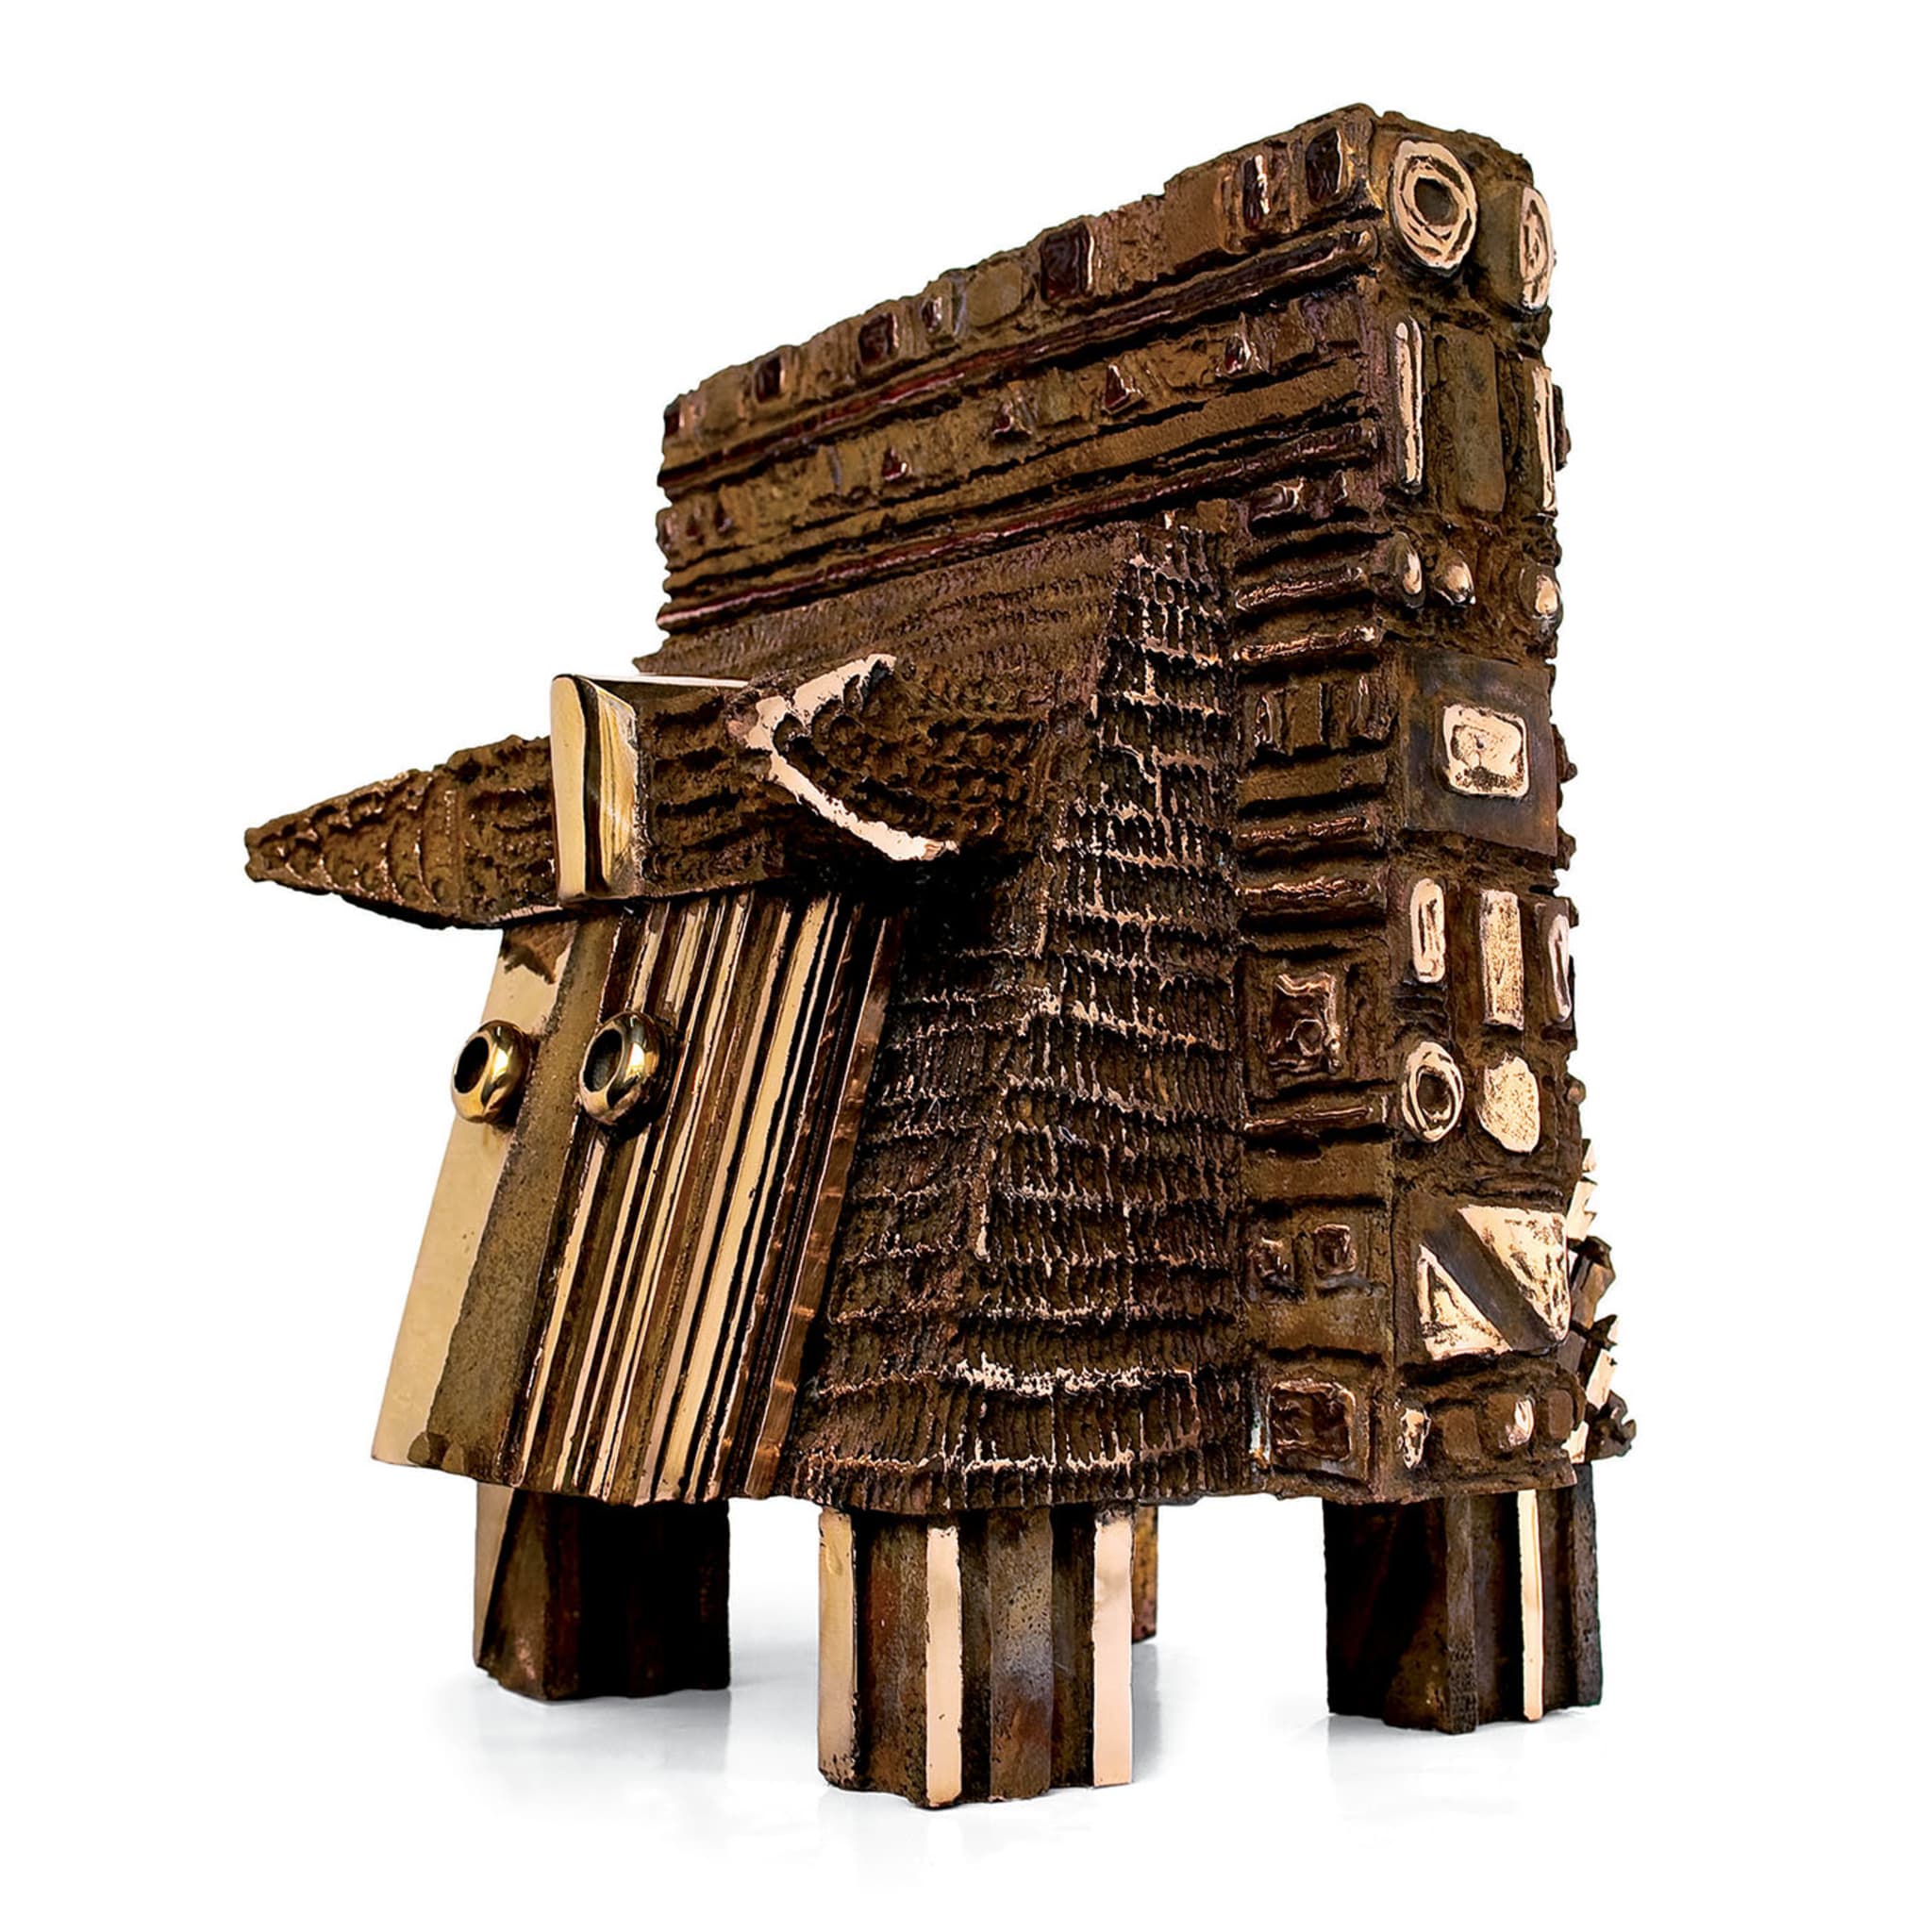 Il Toro dal Muso Mezzo d'Oro Sculpture - Vue alternative 1